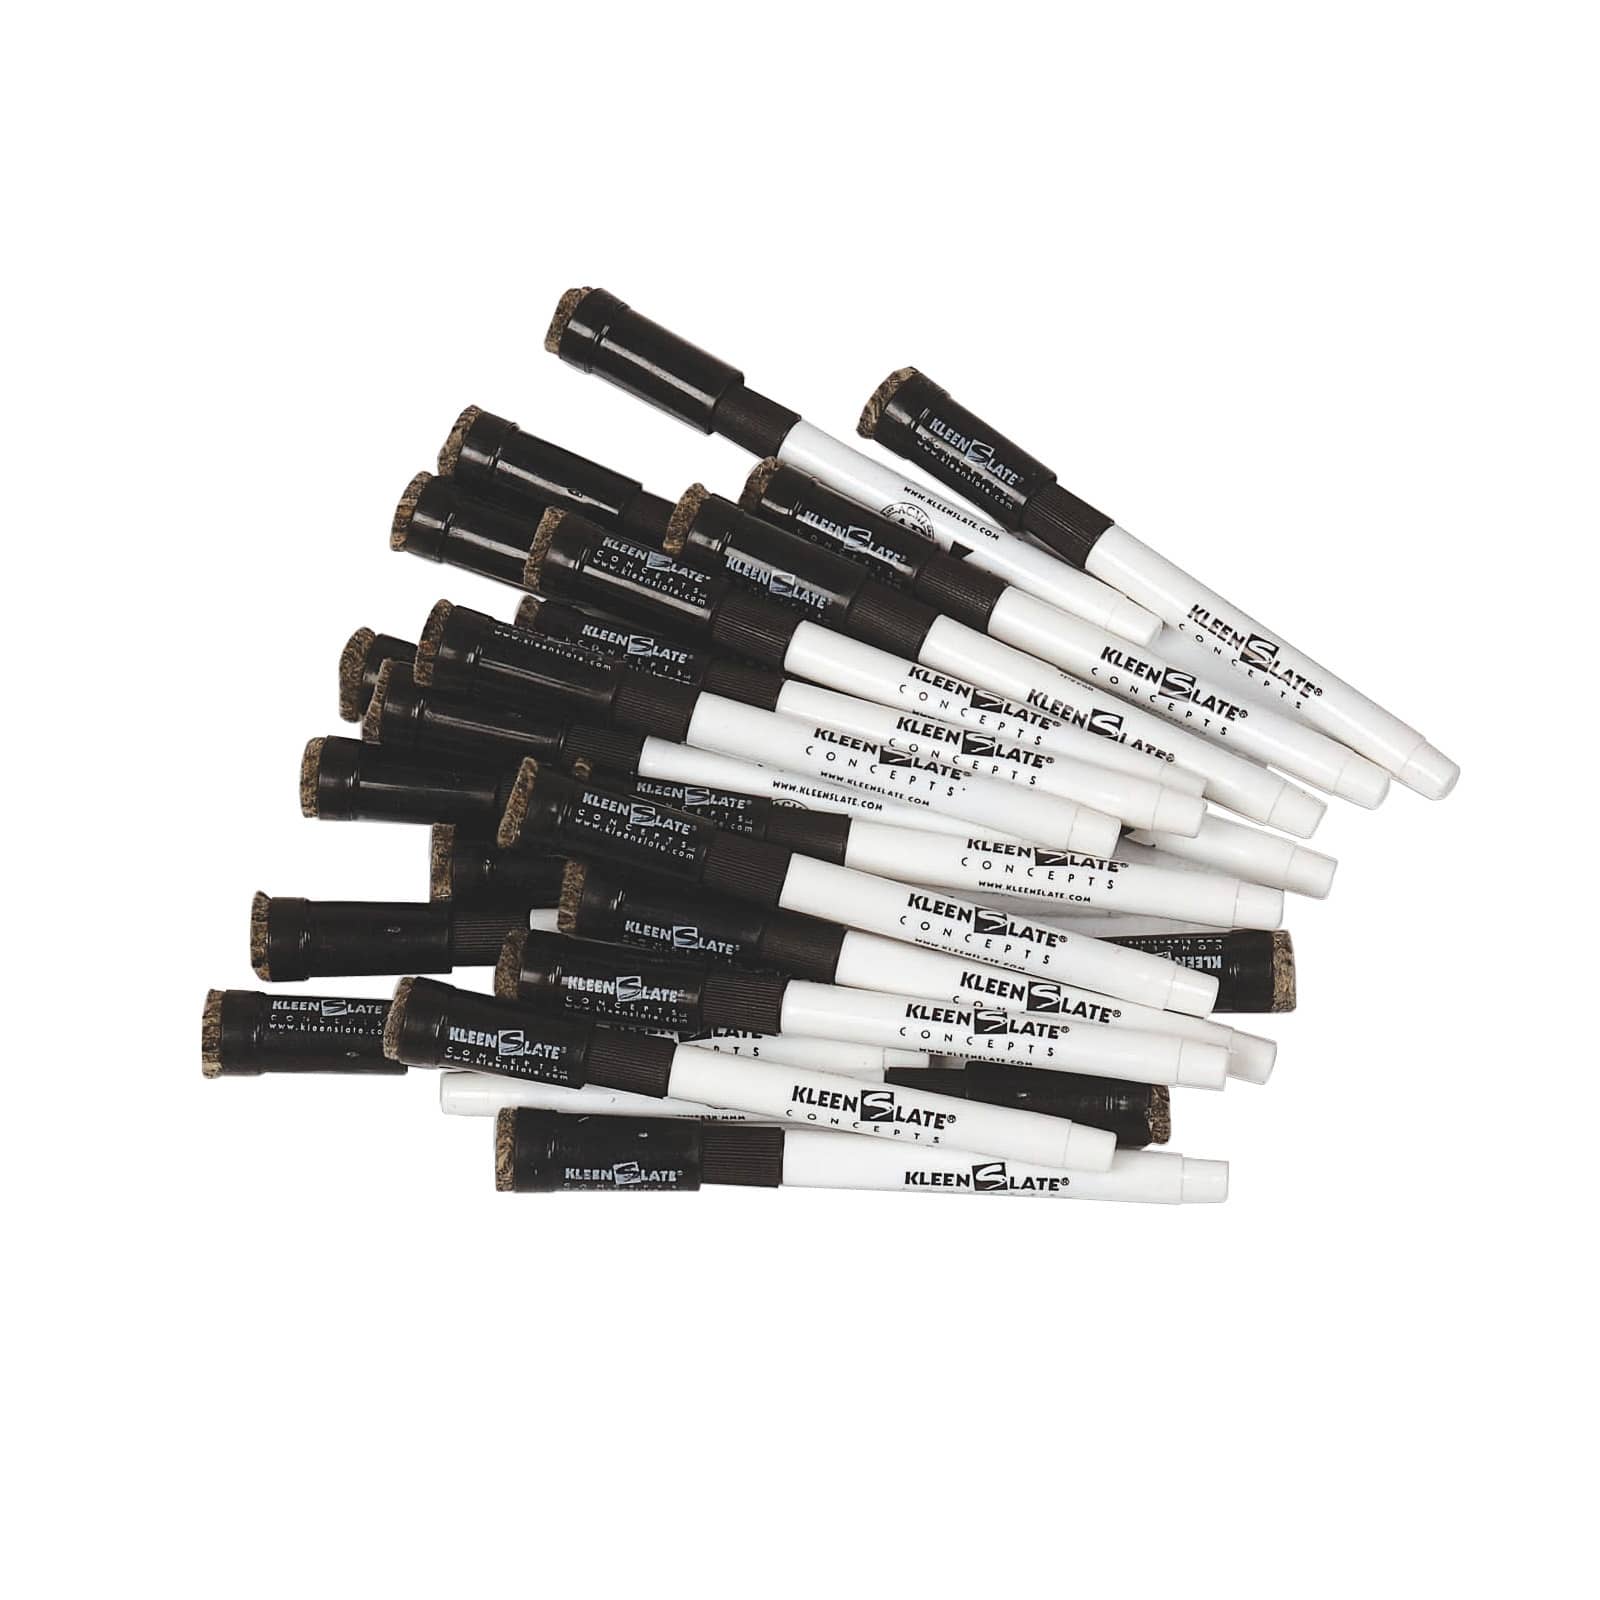 Kleenslate Boardmarker - Black Dry Erase Markers with Eraser Caps